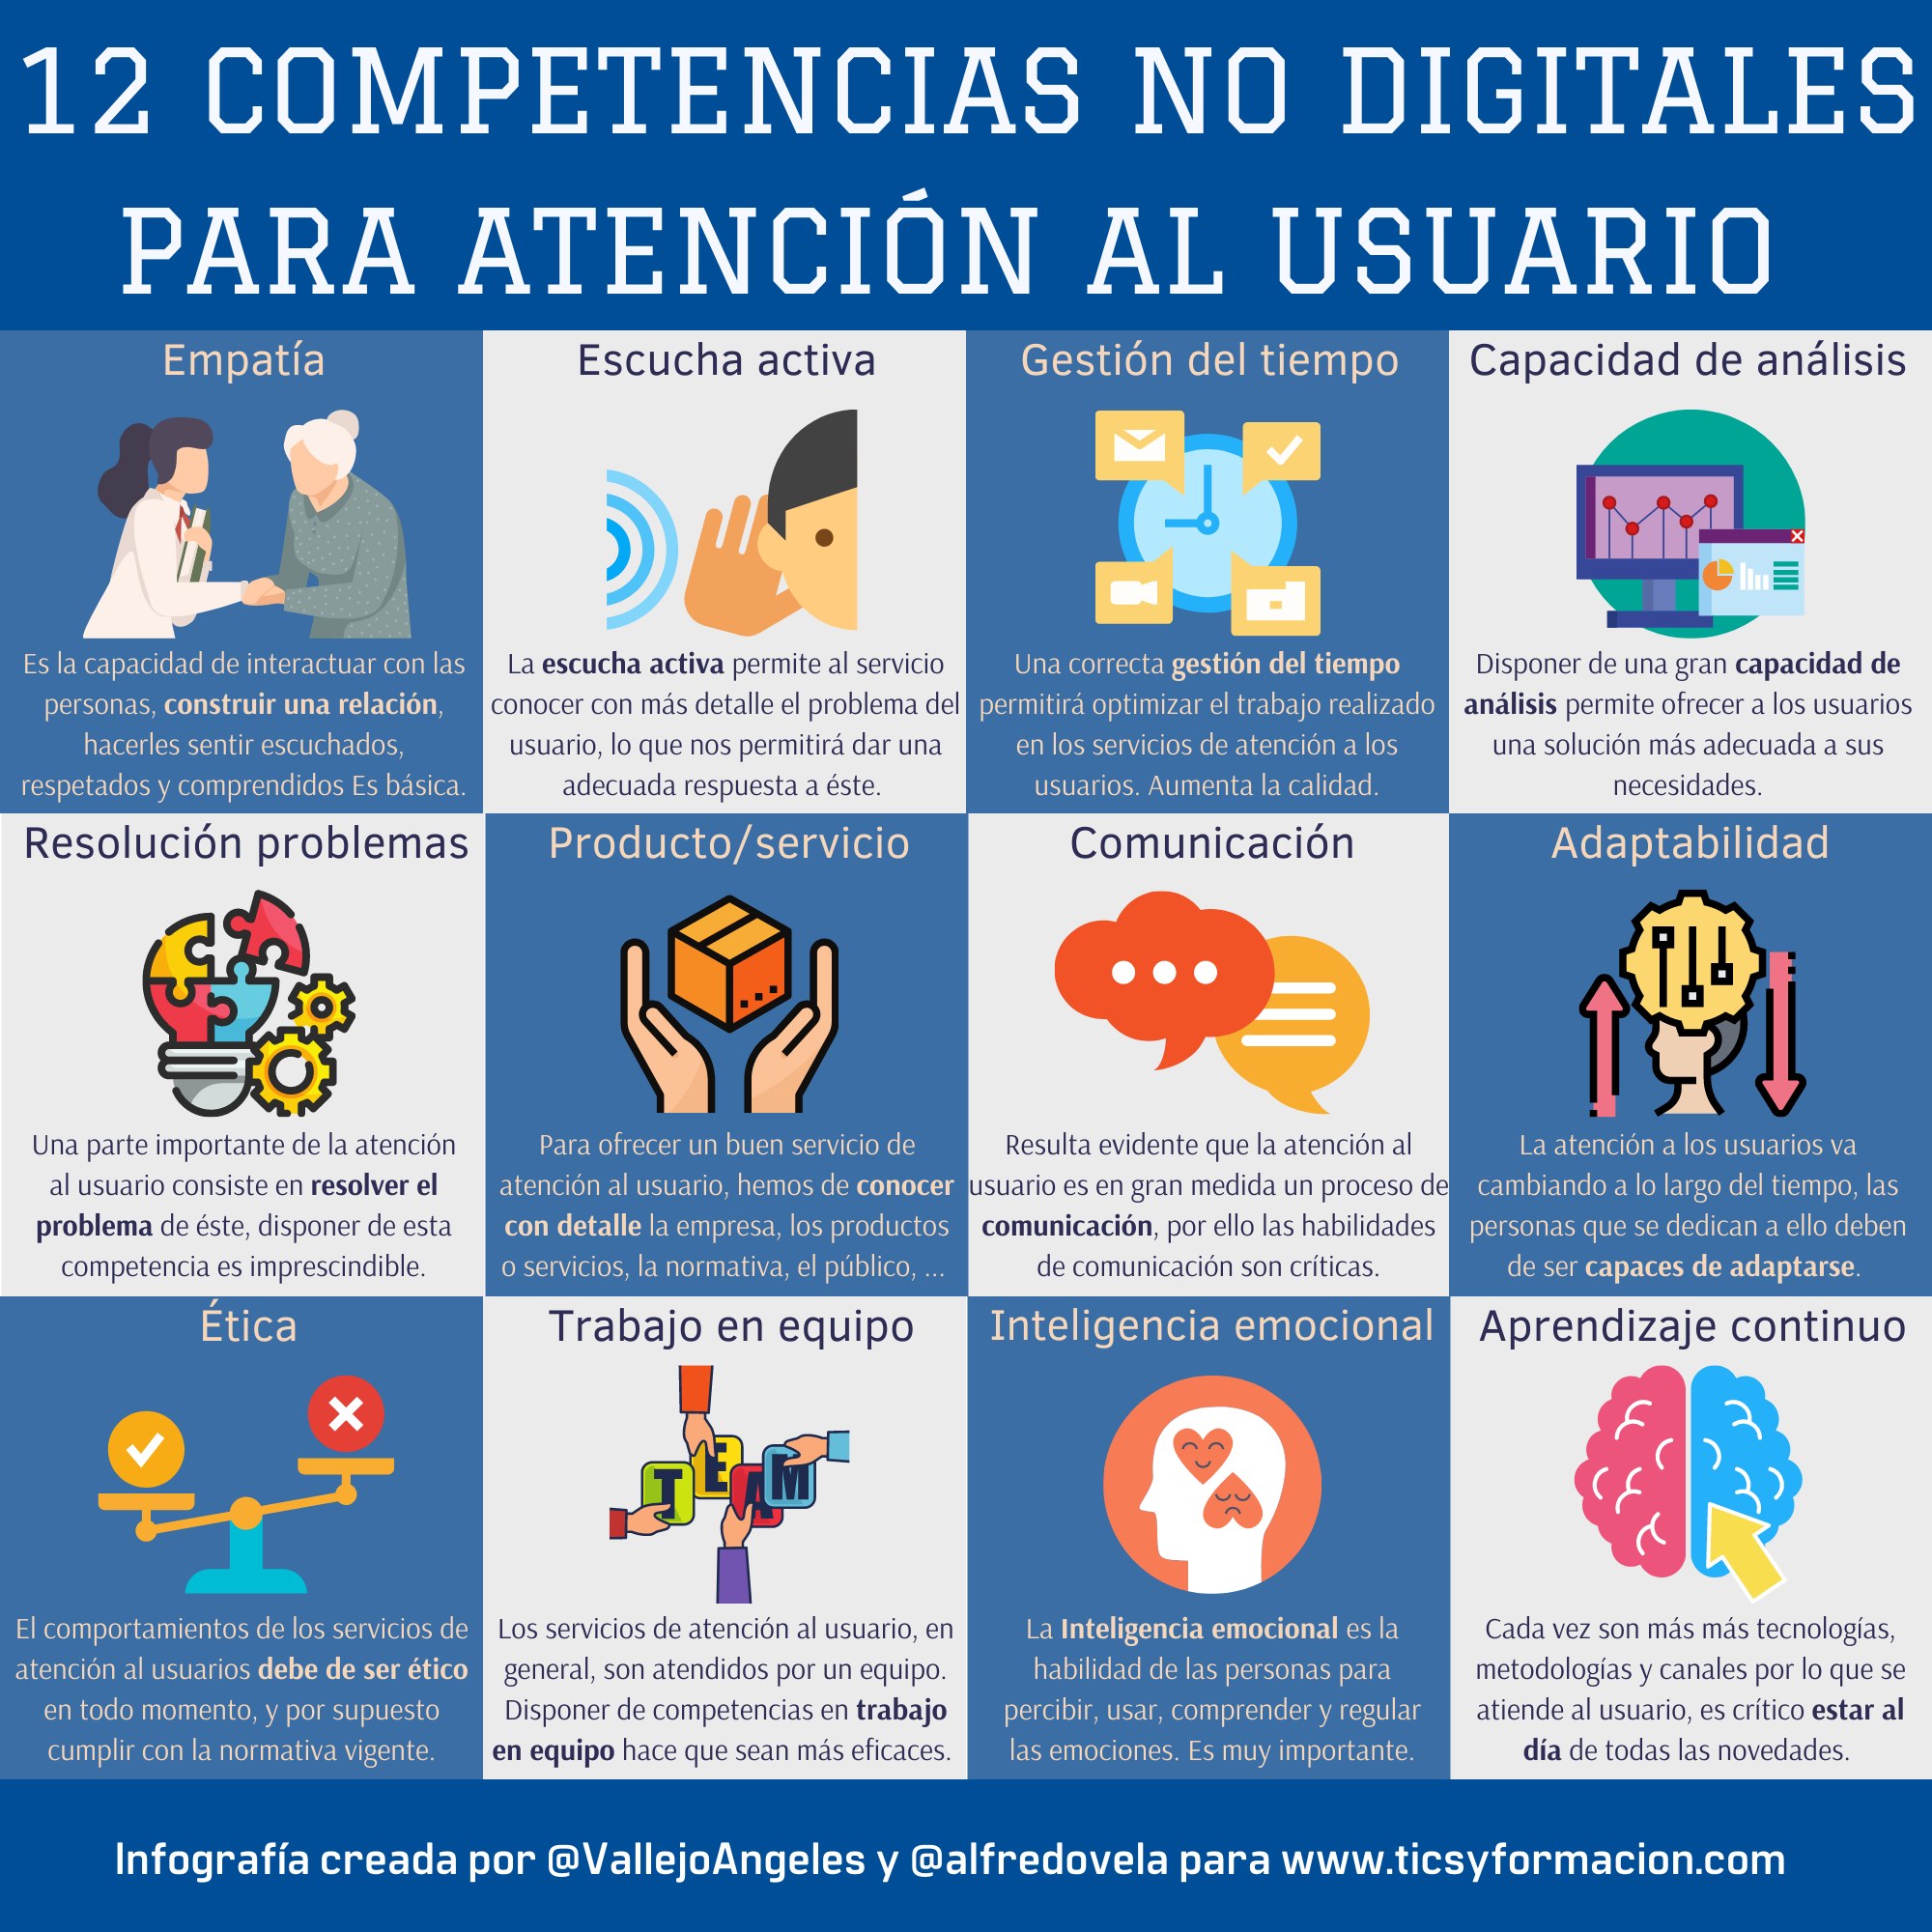 12 competencias digitales de atención al usuario #infografia #marketing #atenciónalusuario